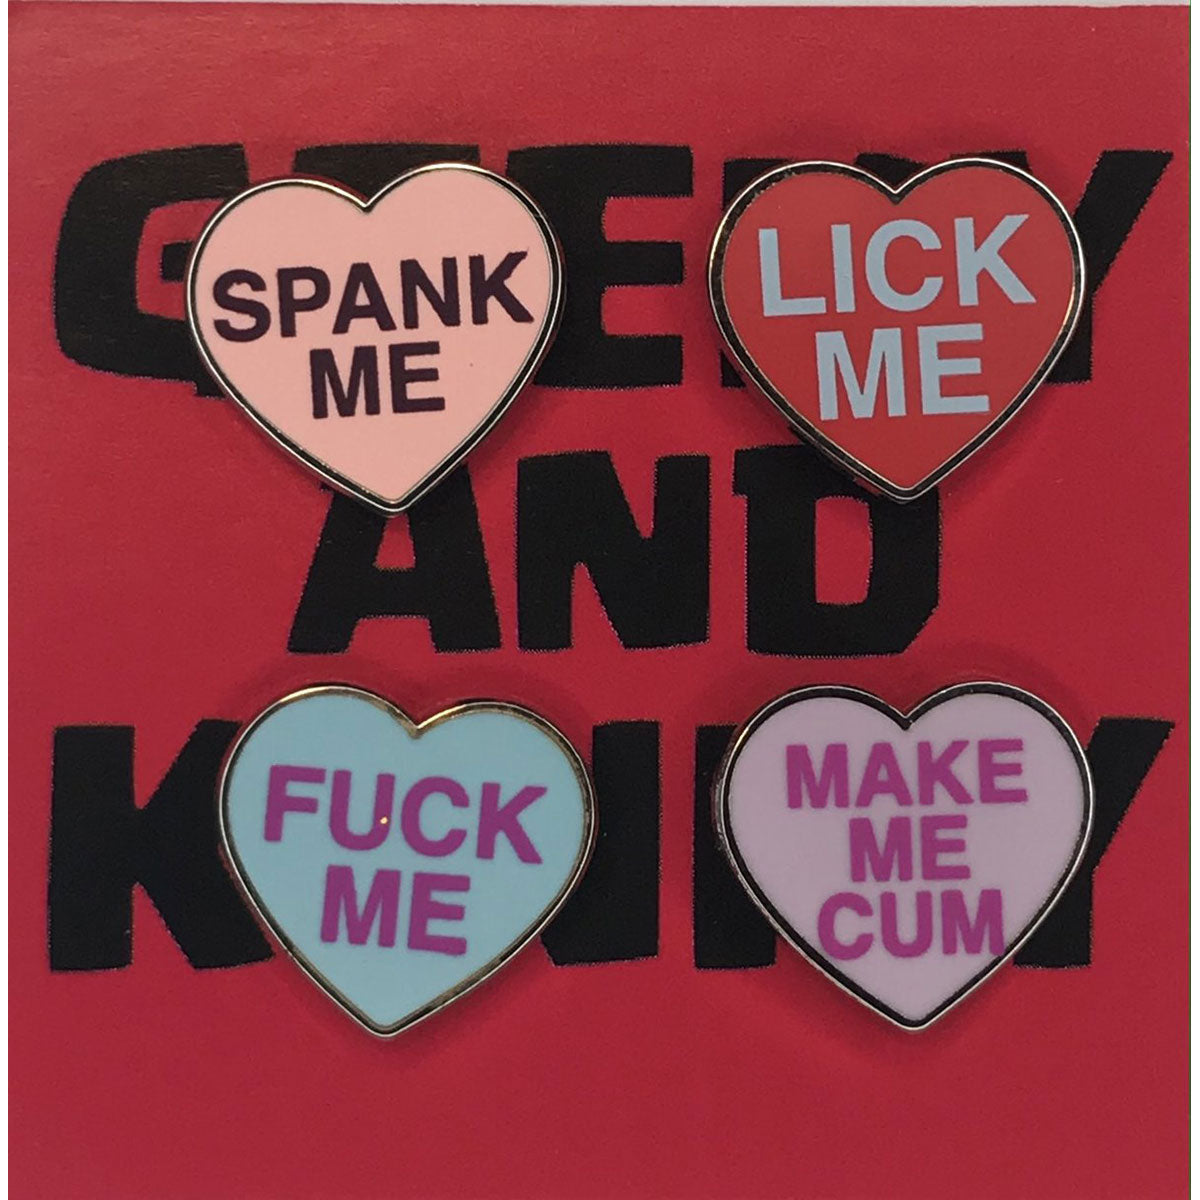 Geeky and Kinky Heart Pin 4 pk (Spank me - lick me - fuck me - make me cum)